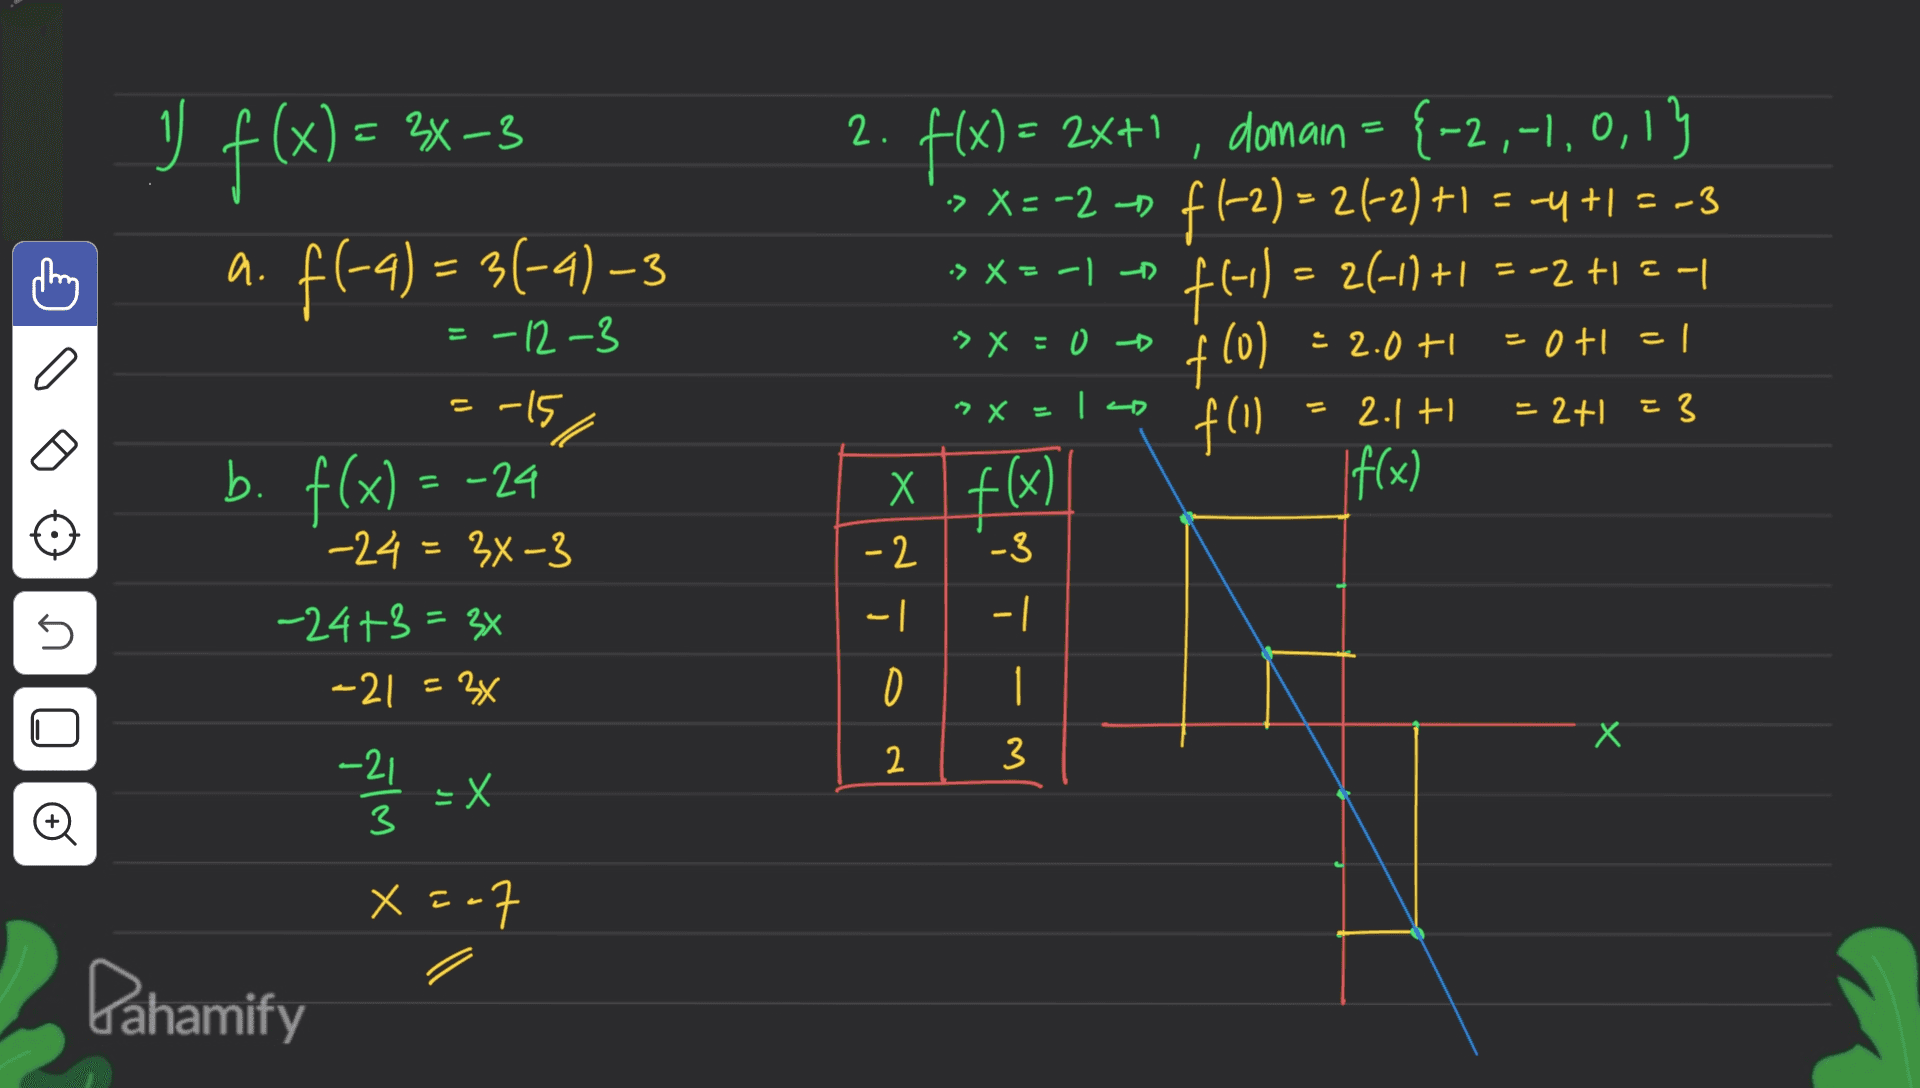 -3 2. = 2X+1 y f(x) = 2x-3 a. fl-q) = 3(-4)-3 f(x) = = 2x+1, domain = {-2,-1,0,13 = , -> X= -2 - f1-2) = 24-2) +1 f1-2) = 24-2) +1 = -4 +1 = -3 46-) = 2(-1) +1 = -2 +12-1 os X=-1 - = = -12-3 > x=0 • 2.0 + f(0) = 0+1 = 1 - "X = Iso j f(1) = 2+1 E3 こ b. f(x) -15 -24 -24 = 34-3 2.1 + If(x) = x f(x) -3 -2 -| -1 n 5 1 -24+3 = 34 -21 = 36 D 1 U Х 2 3 o o - -21 3 -X x = -7 Pahamify 